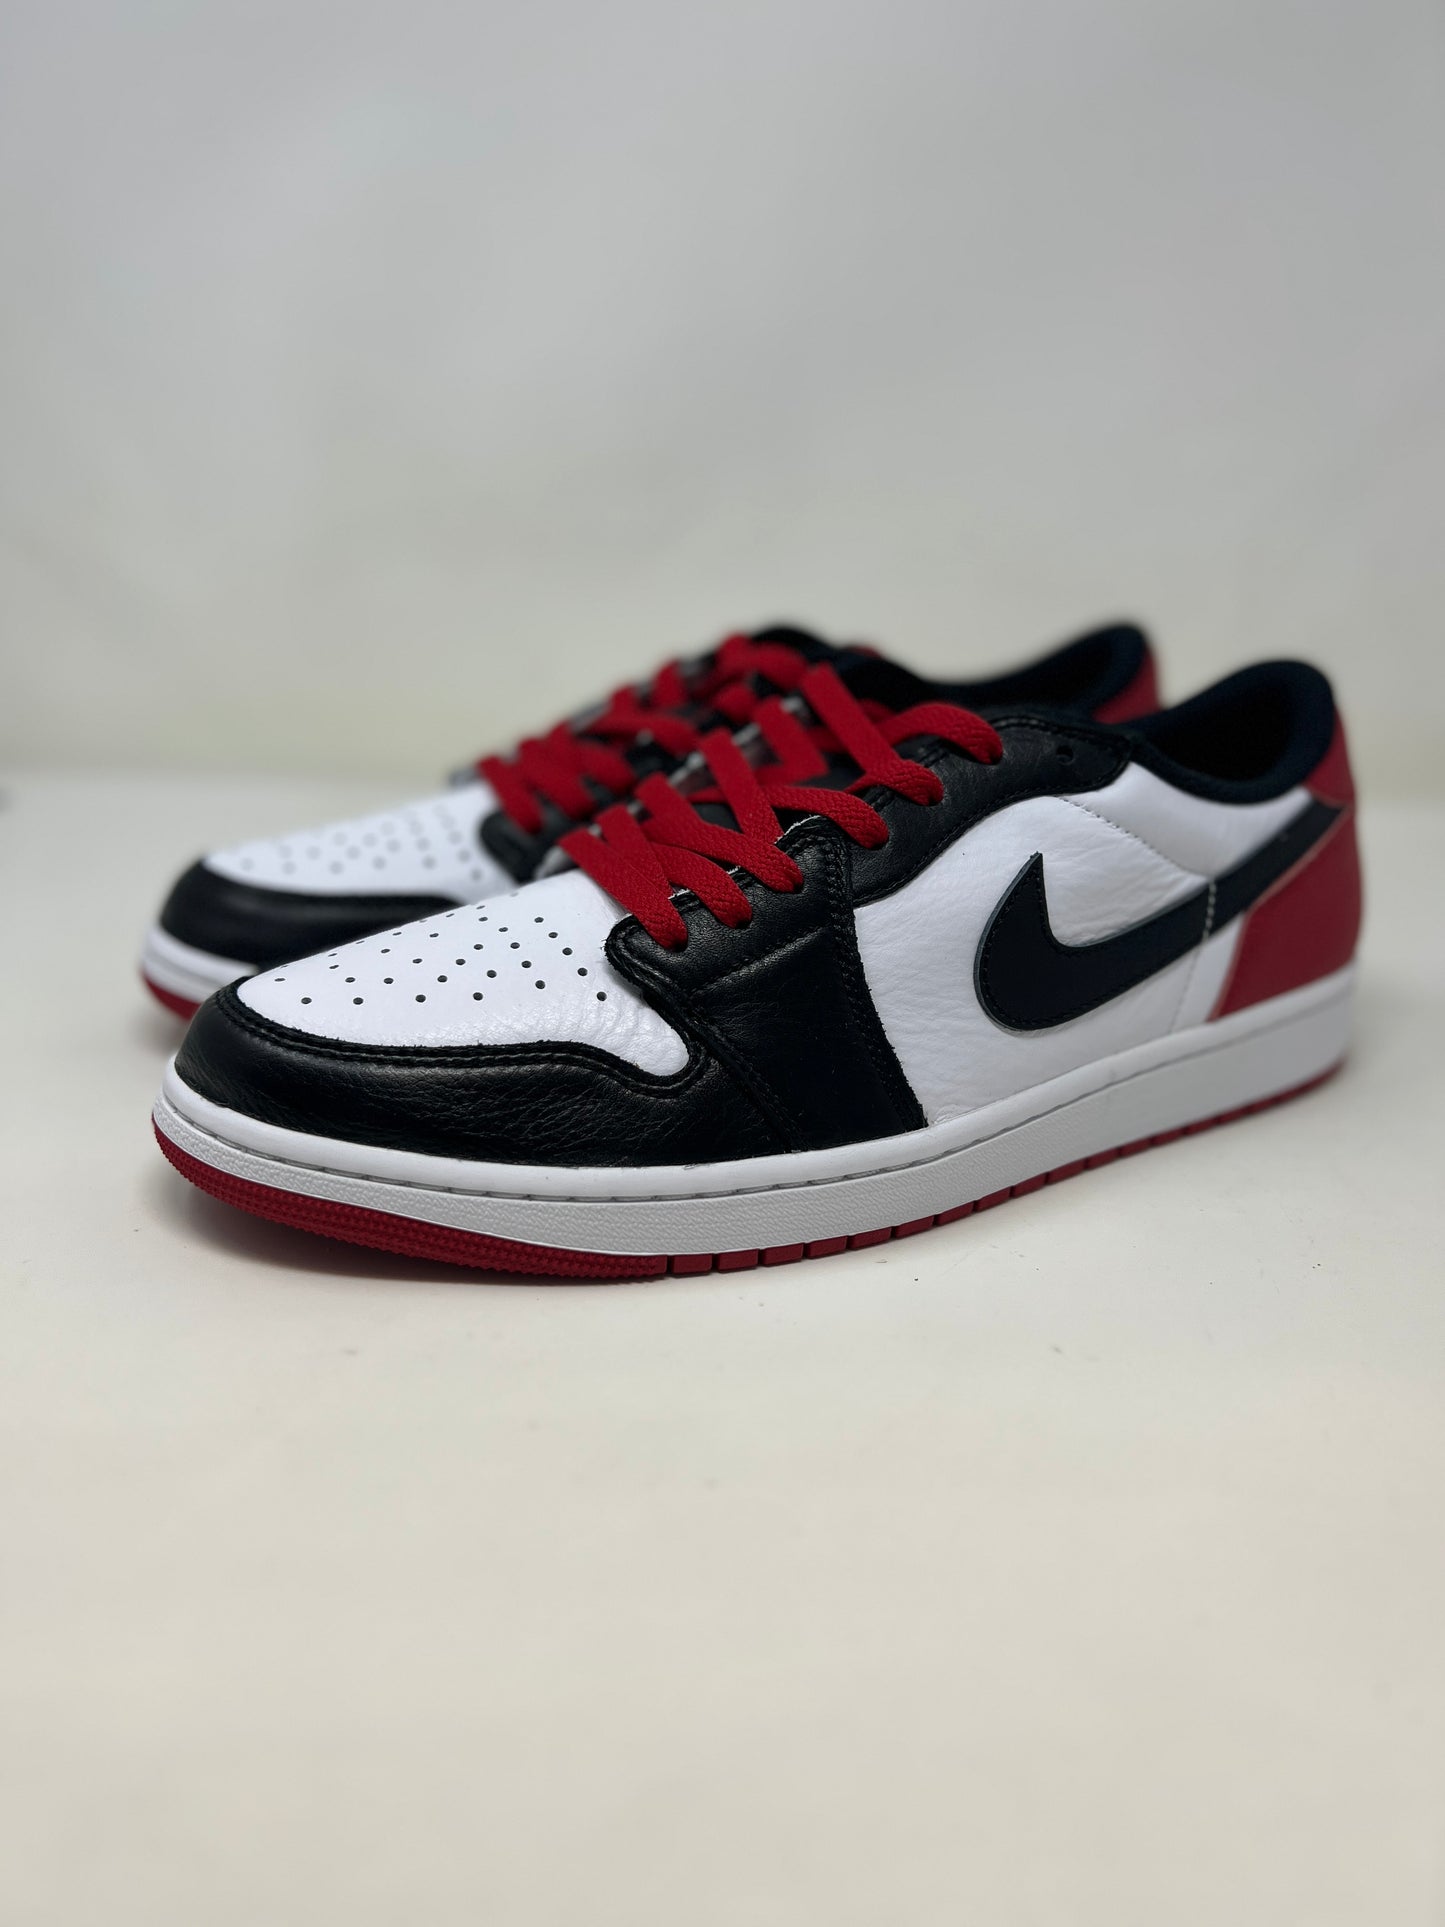 Nike Air Jordan 1 Low OG 'Black Toe'